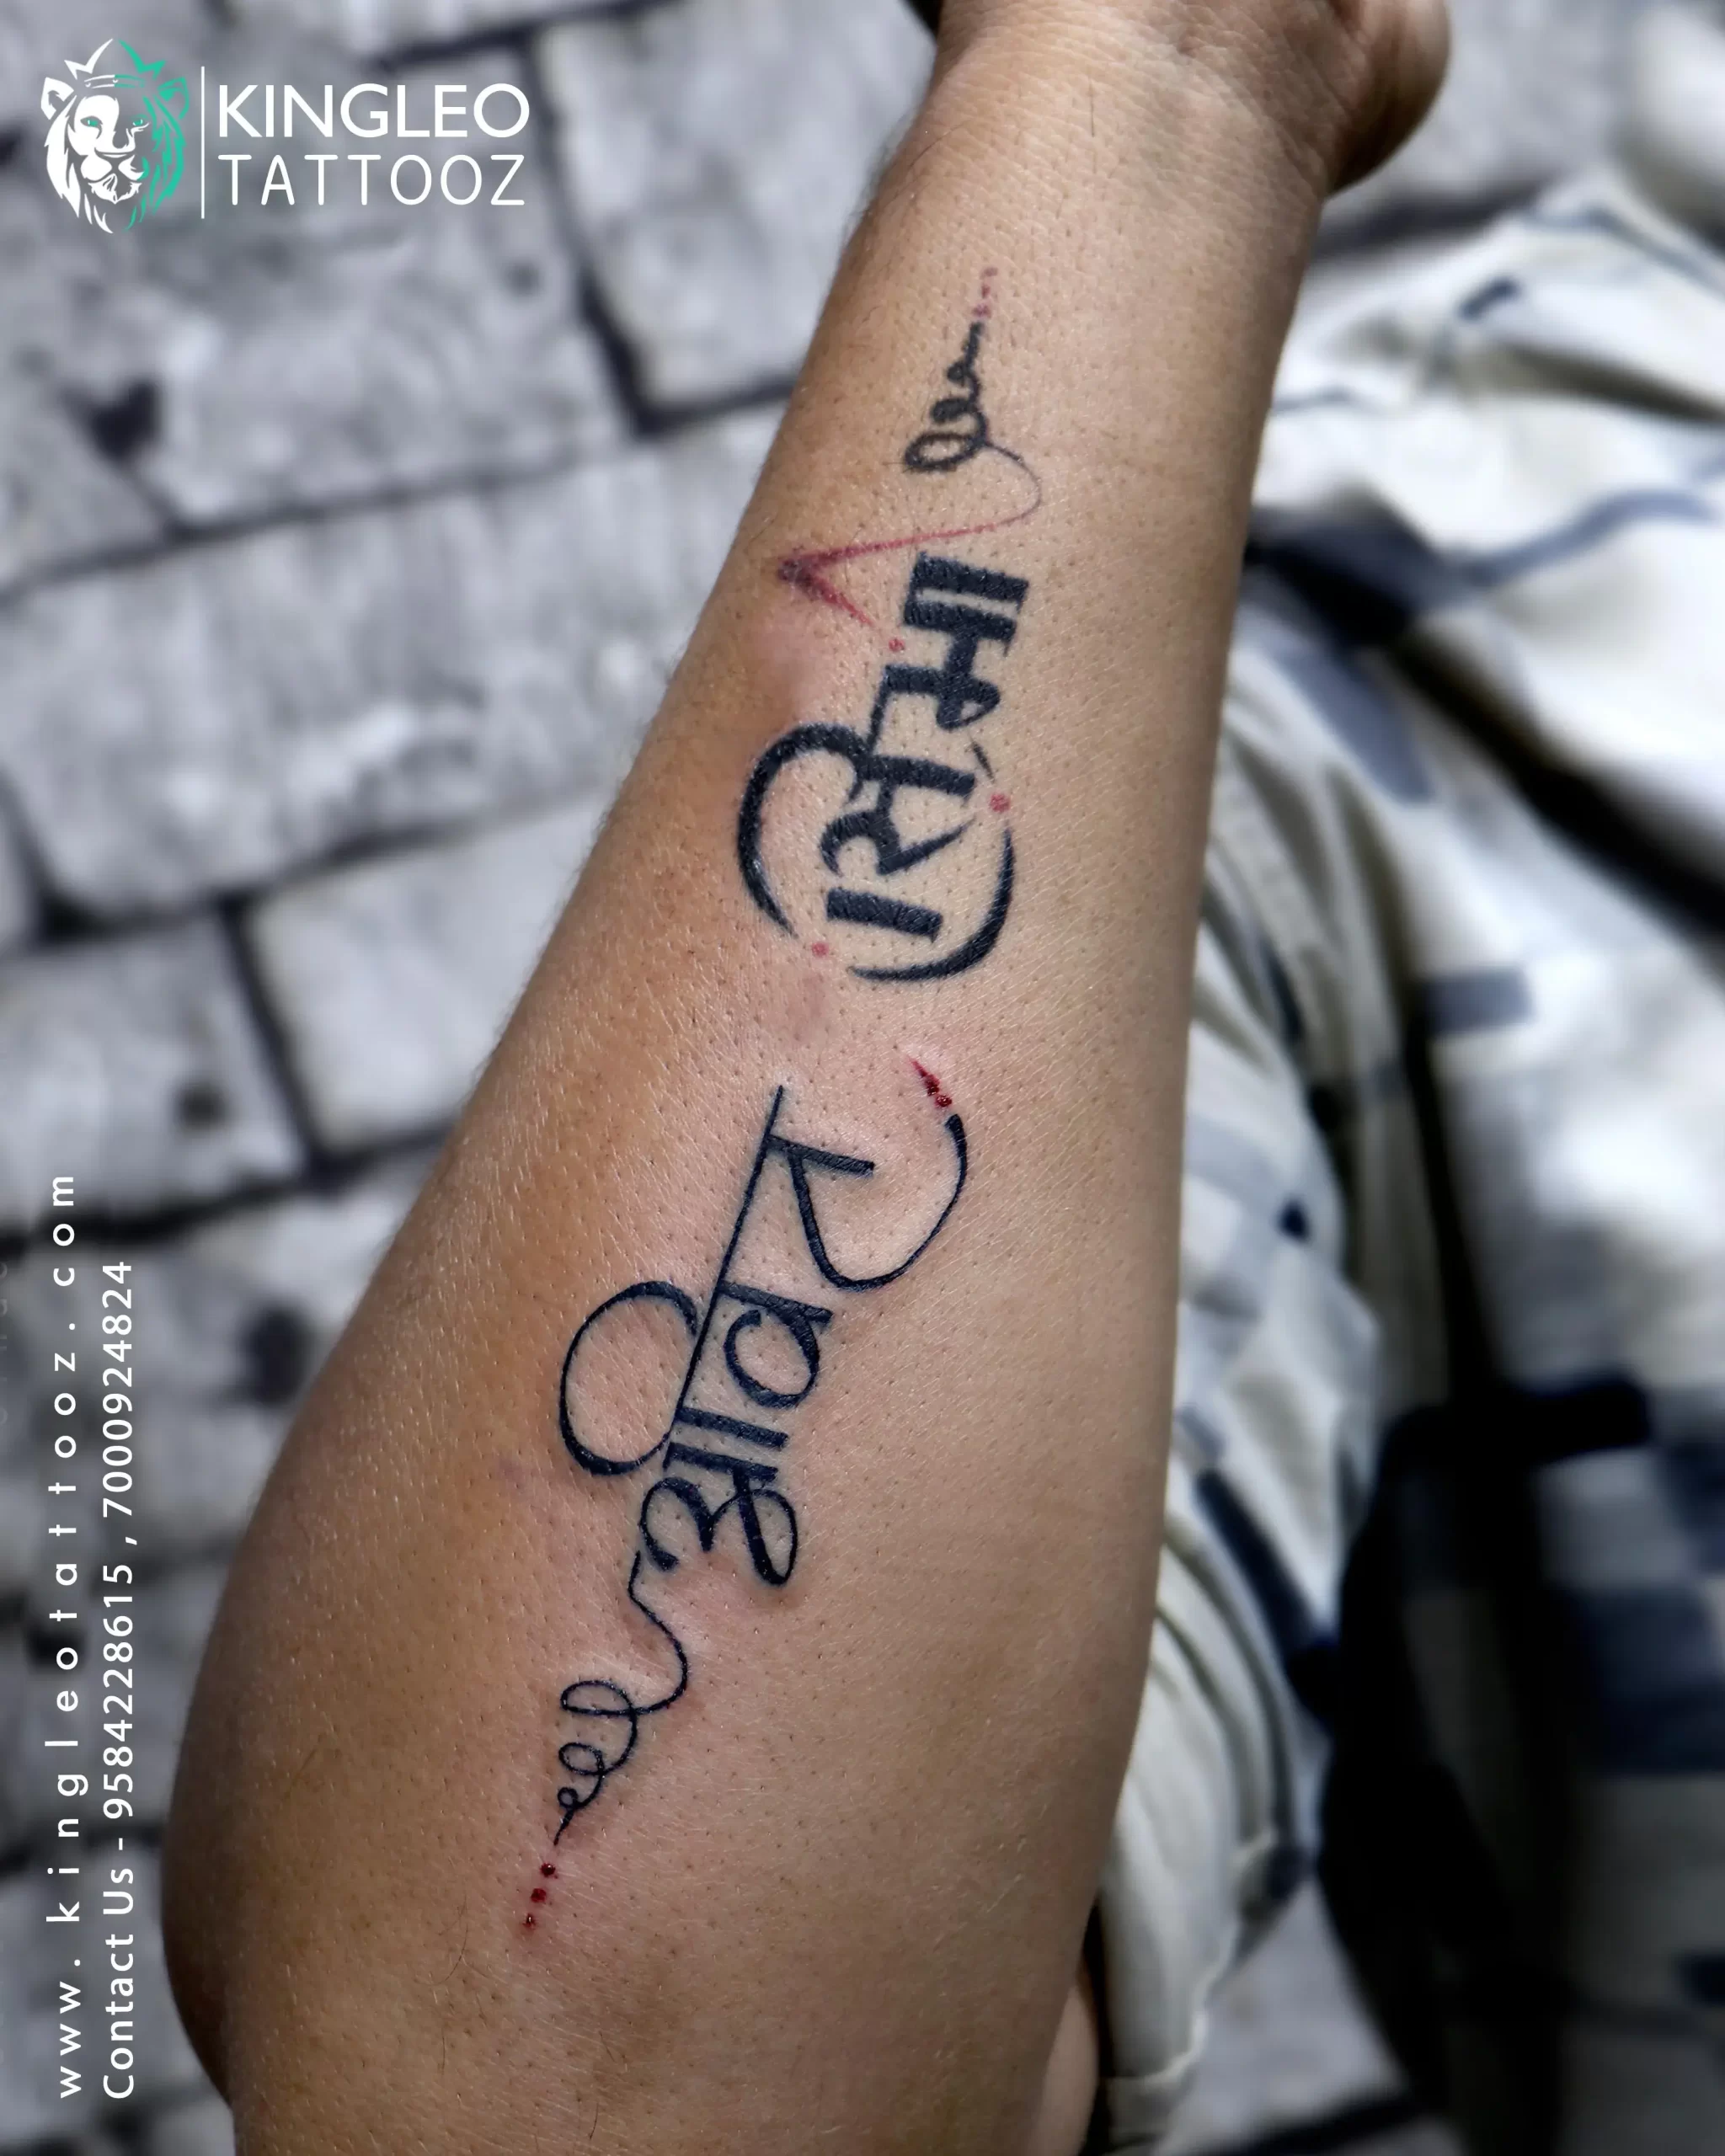 Kshatriyakulavatans name tattoo - YouTube